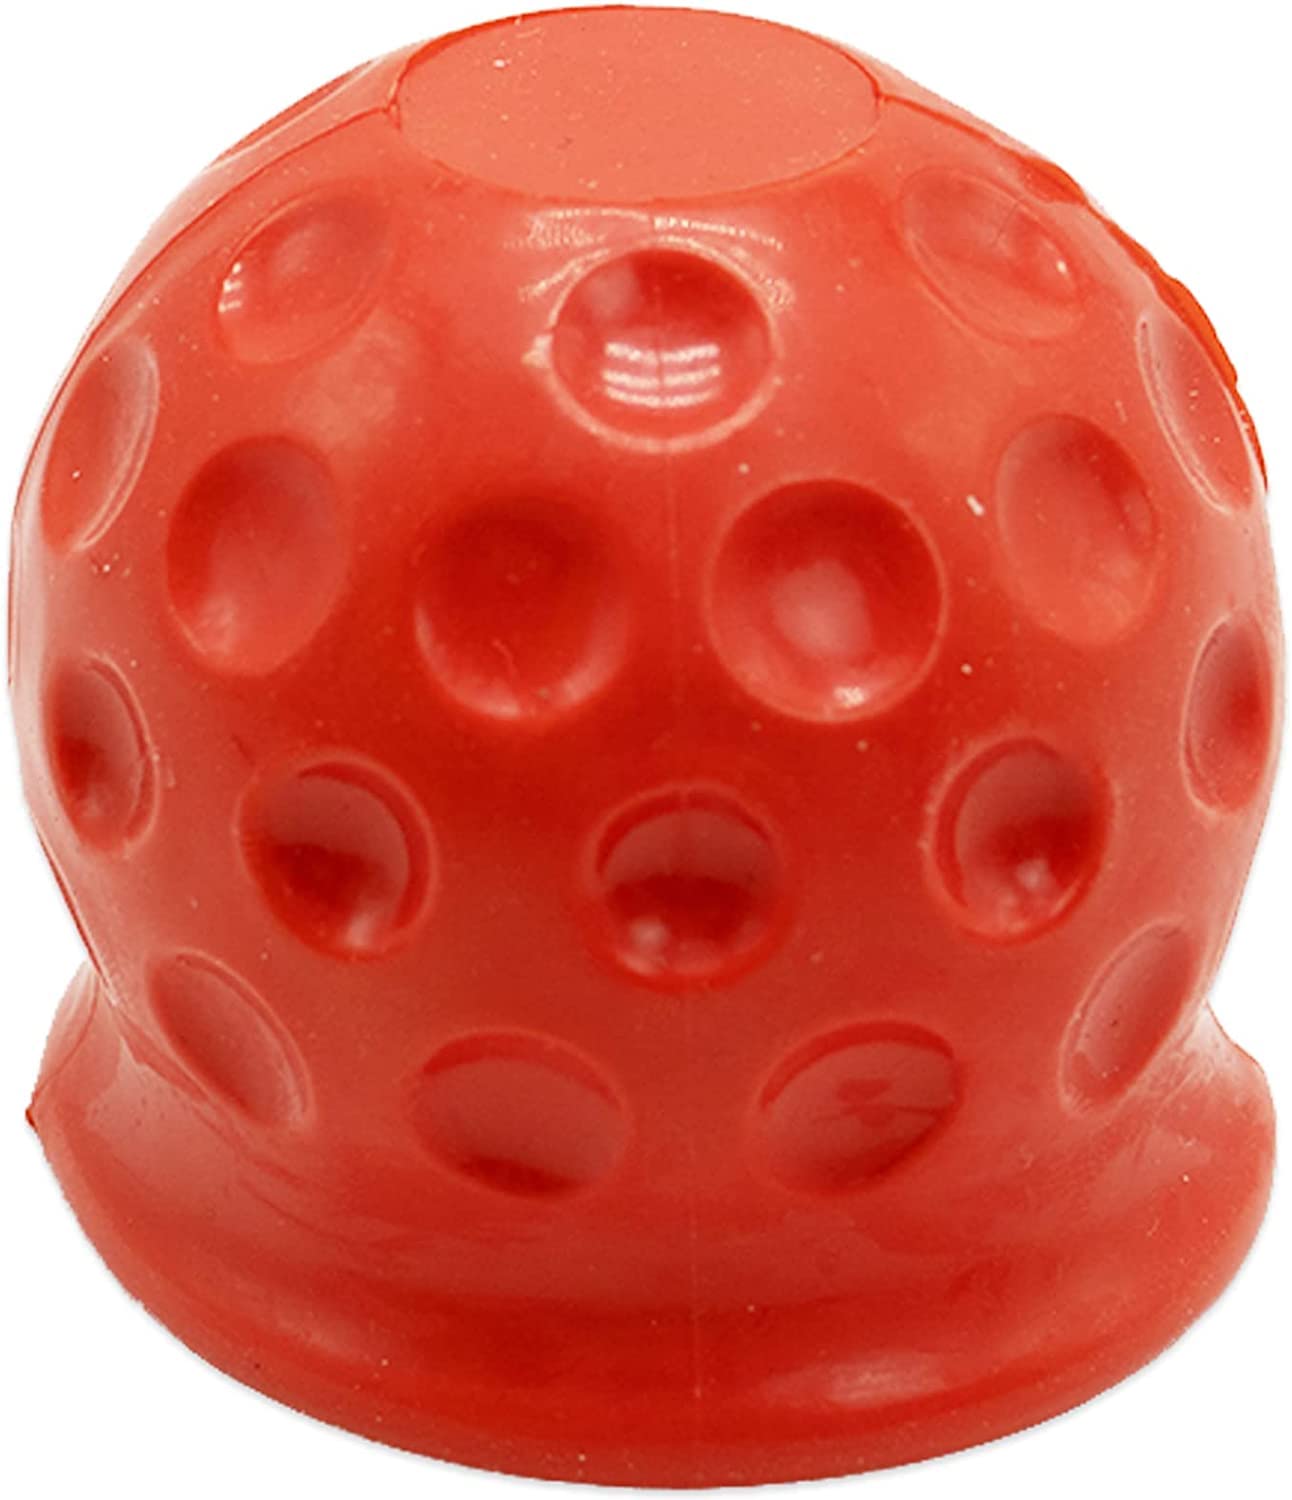 Universal 50mm Trailer Gummi Abschleppstange Ball Abdeckung, weiche Anhängevorrichtung Abdeckung schützen für LKW Anhänger Wohnwagen RV Auto (Rot) von ISKIP